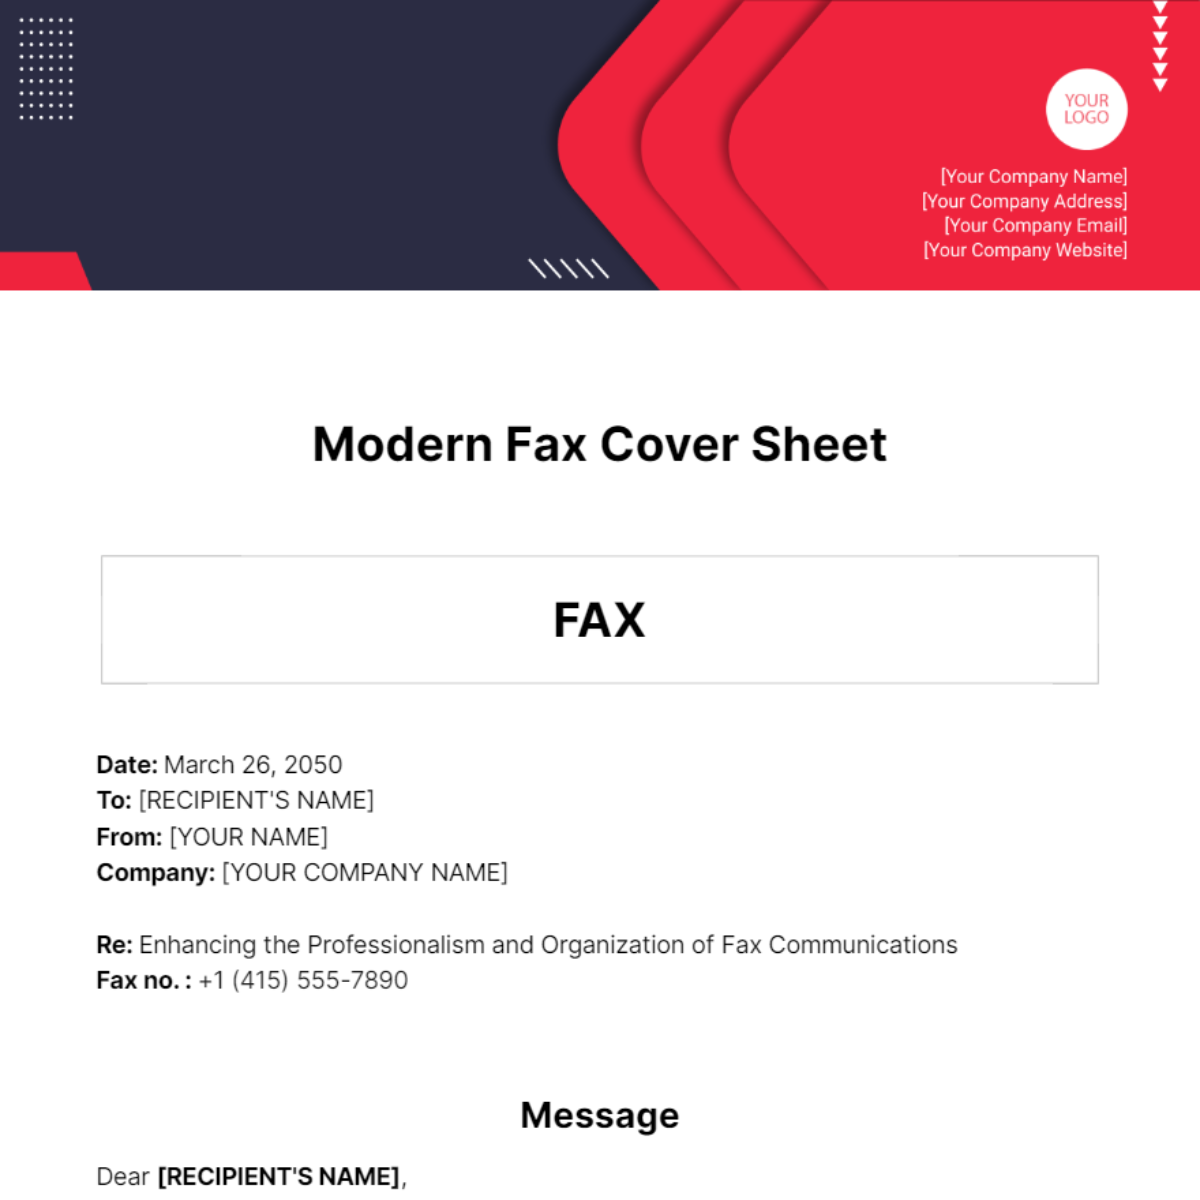 Modern Fax Cover Sheet